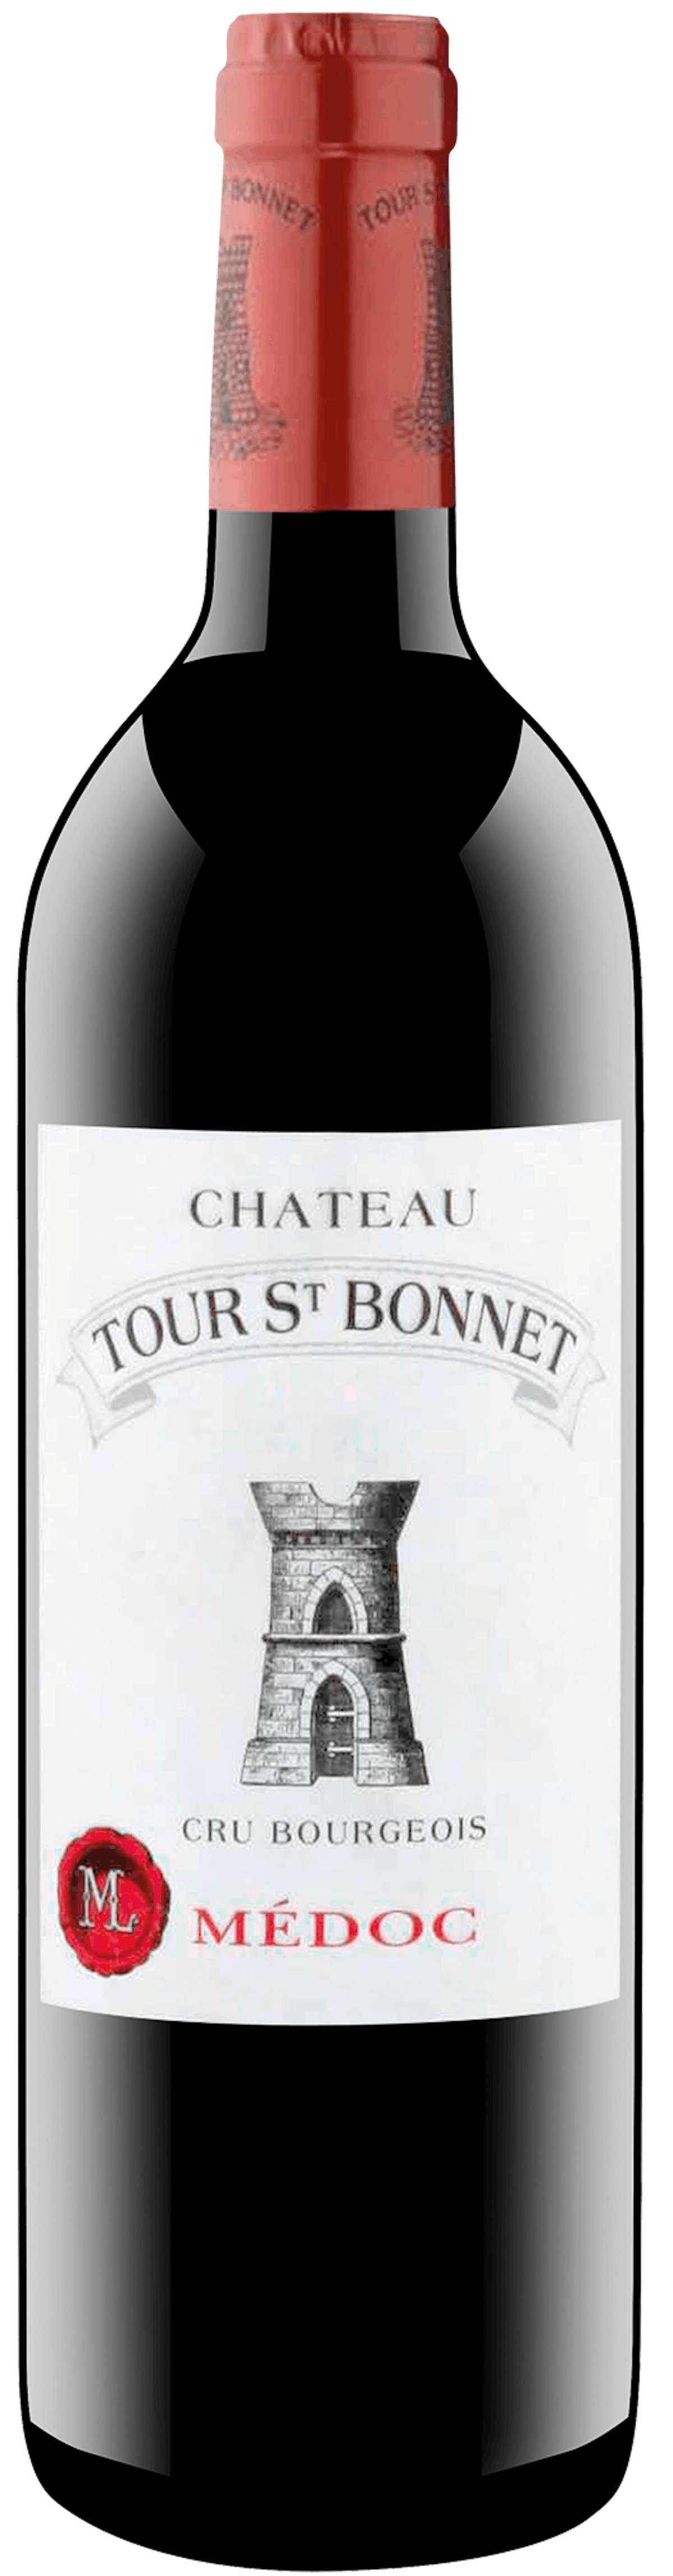 Château Tour St. Bonnet Cru Bourgeois